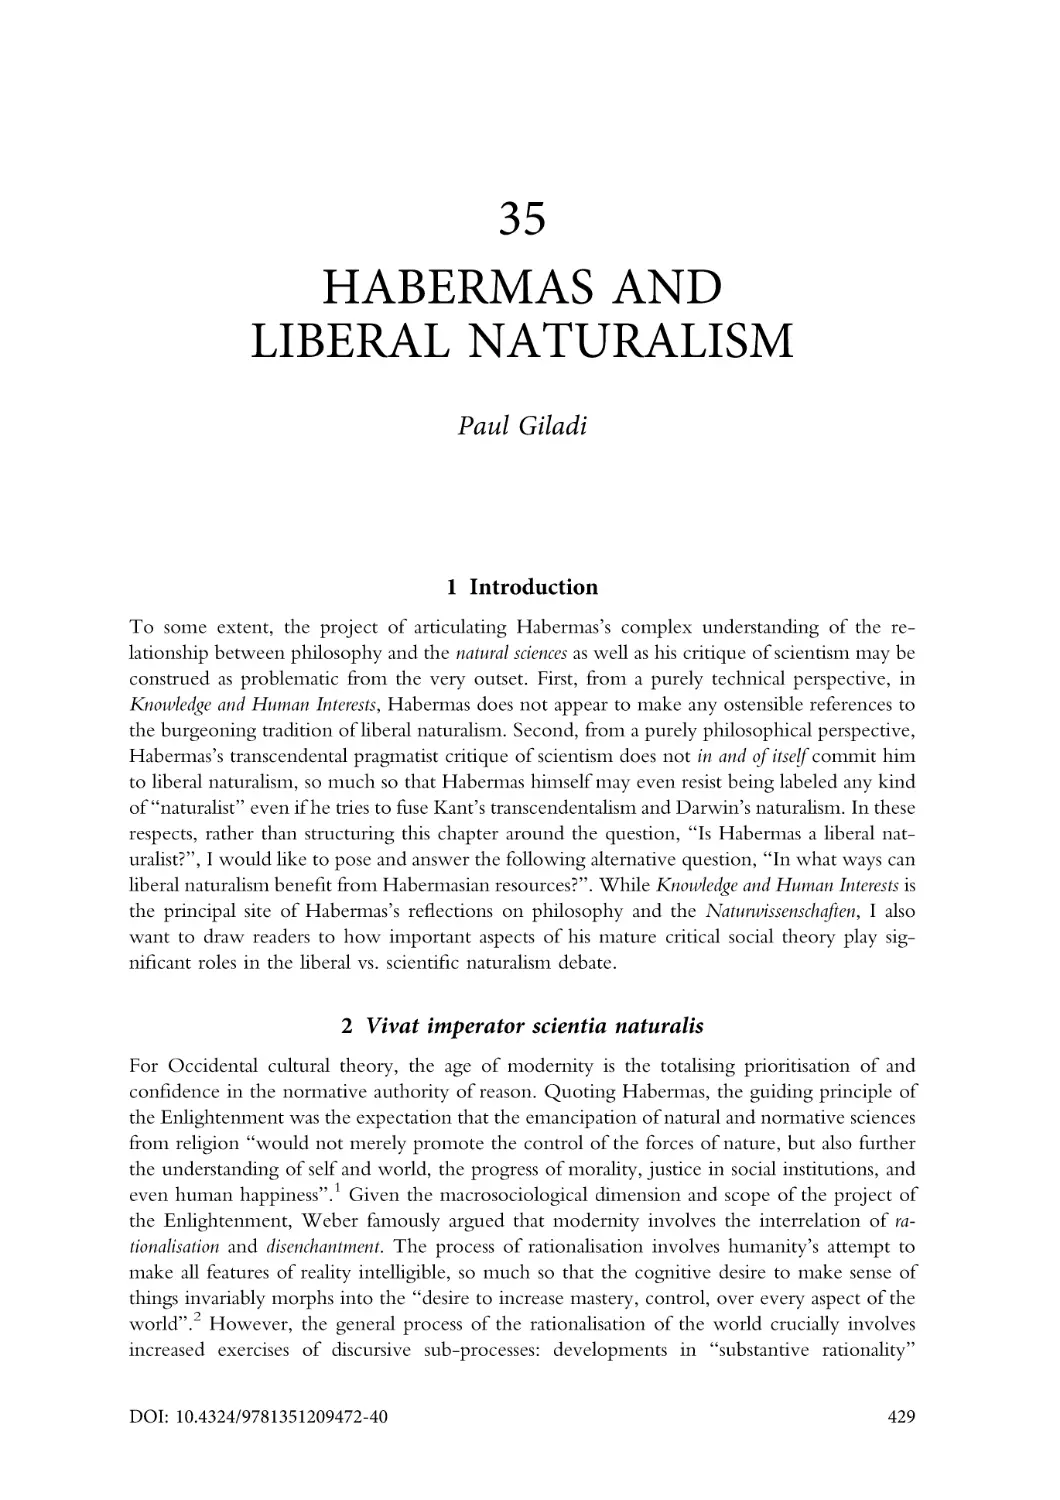 35. Habermas and liberal naturalism
1. Introduction
2. Vivat imperator scientia naturalis